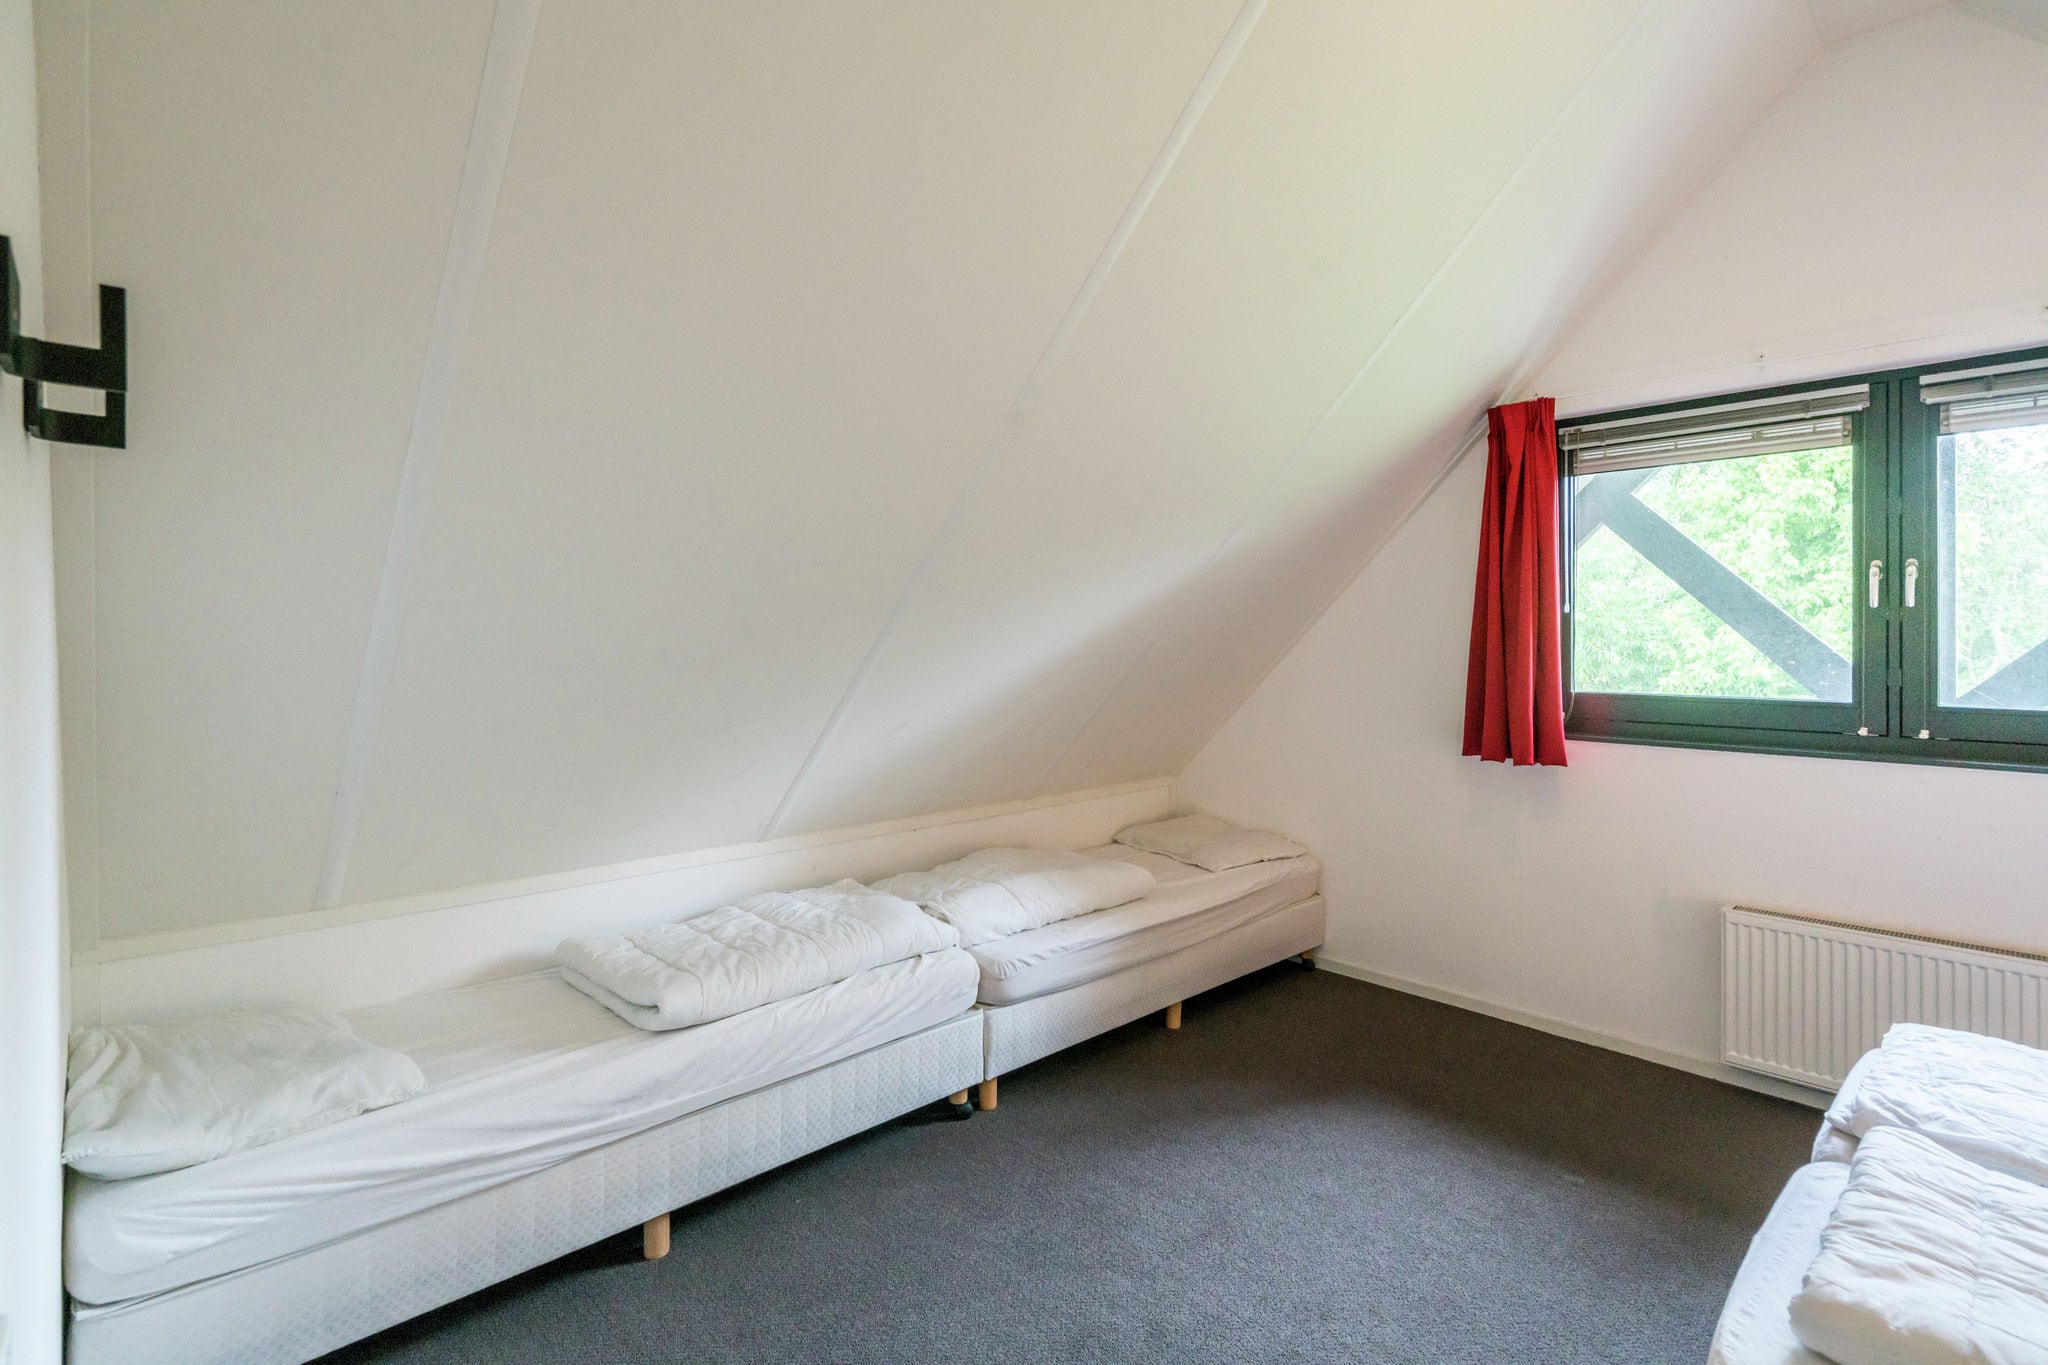 Komfortabel eingerichtetes Ferienhaus am Slotermeer